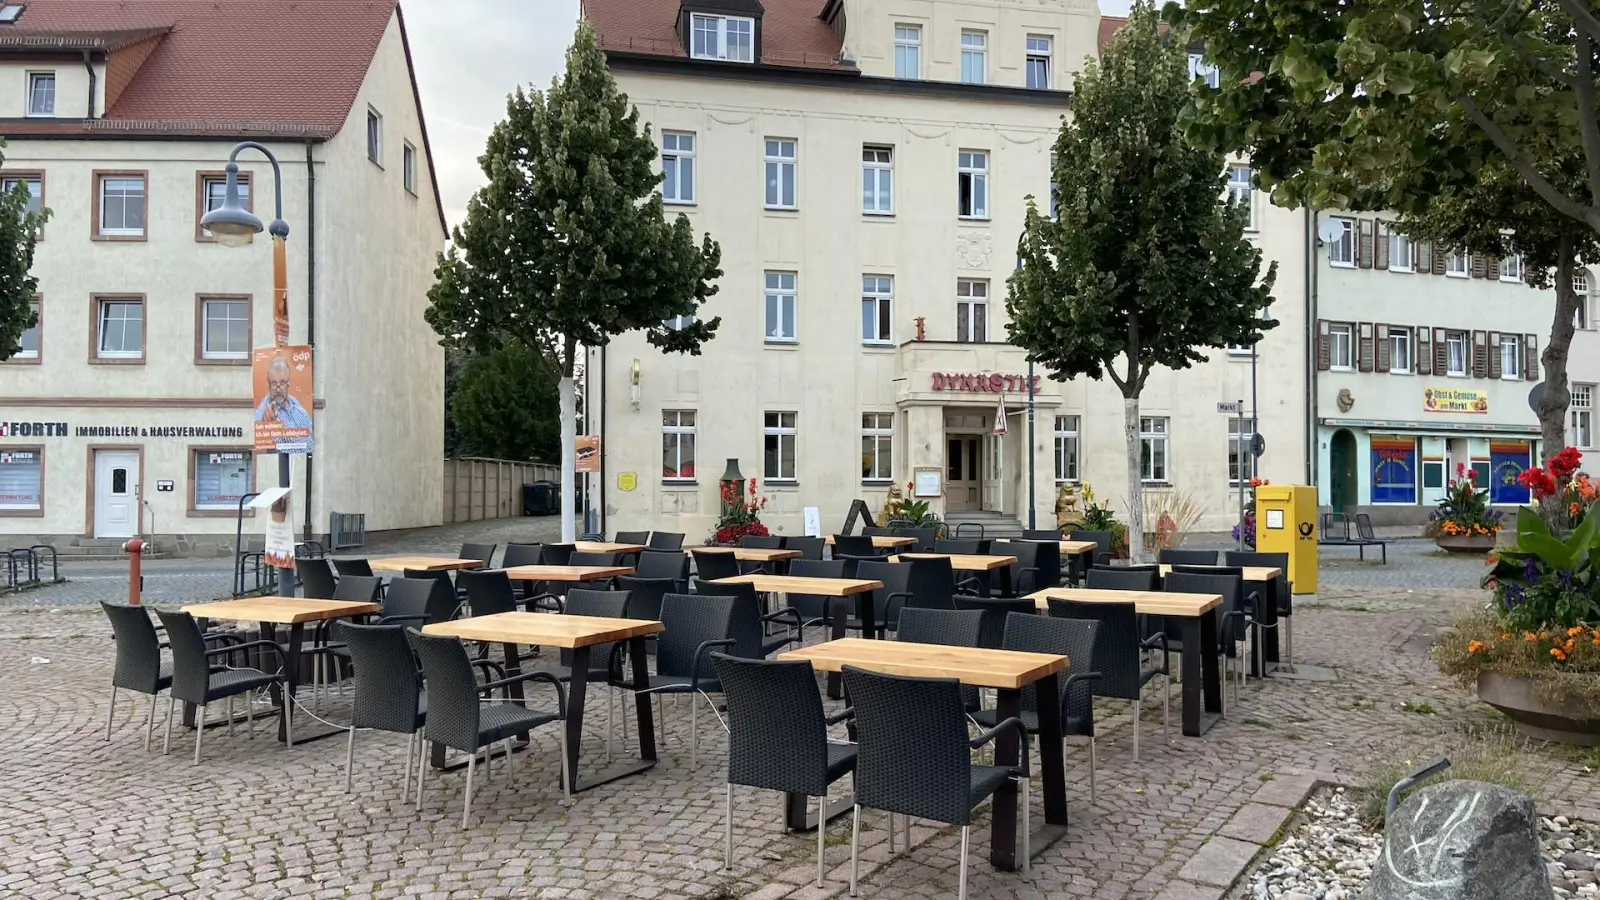 Darum stehen jetzt Tische und Stühle auf dem Markt (Foto: taucha-kompakt.de)